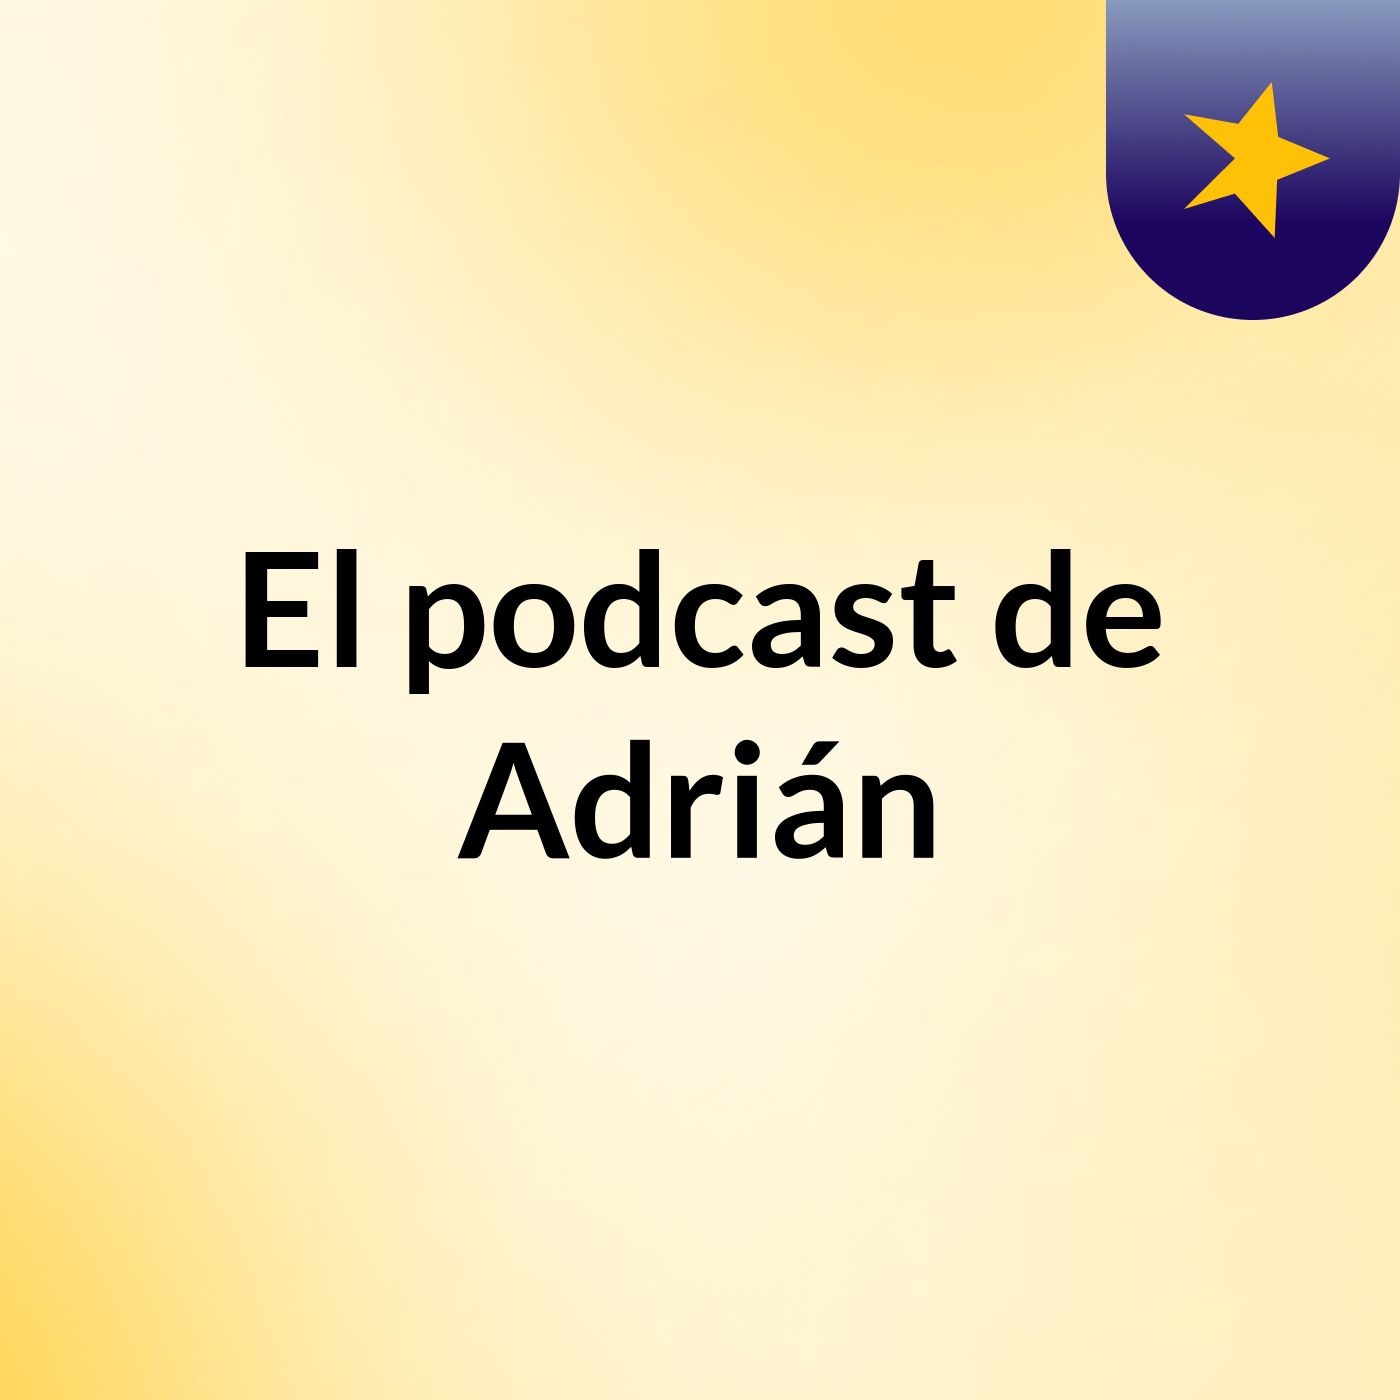 Episodio 7 - El podcast de Adrián